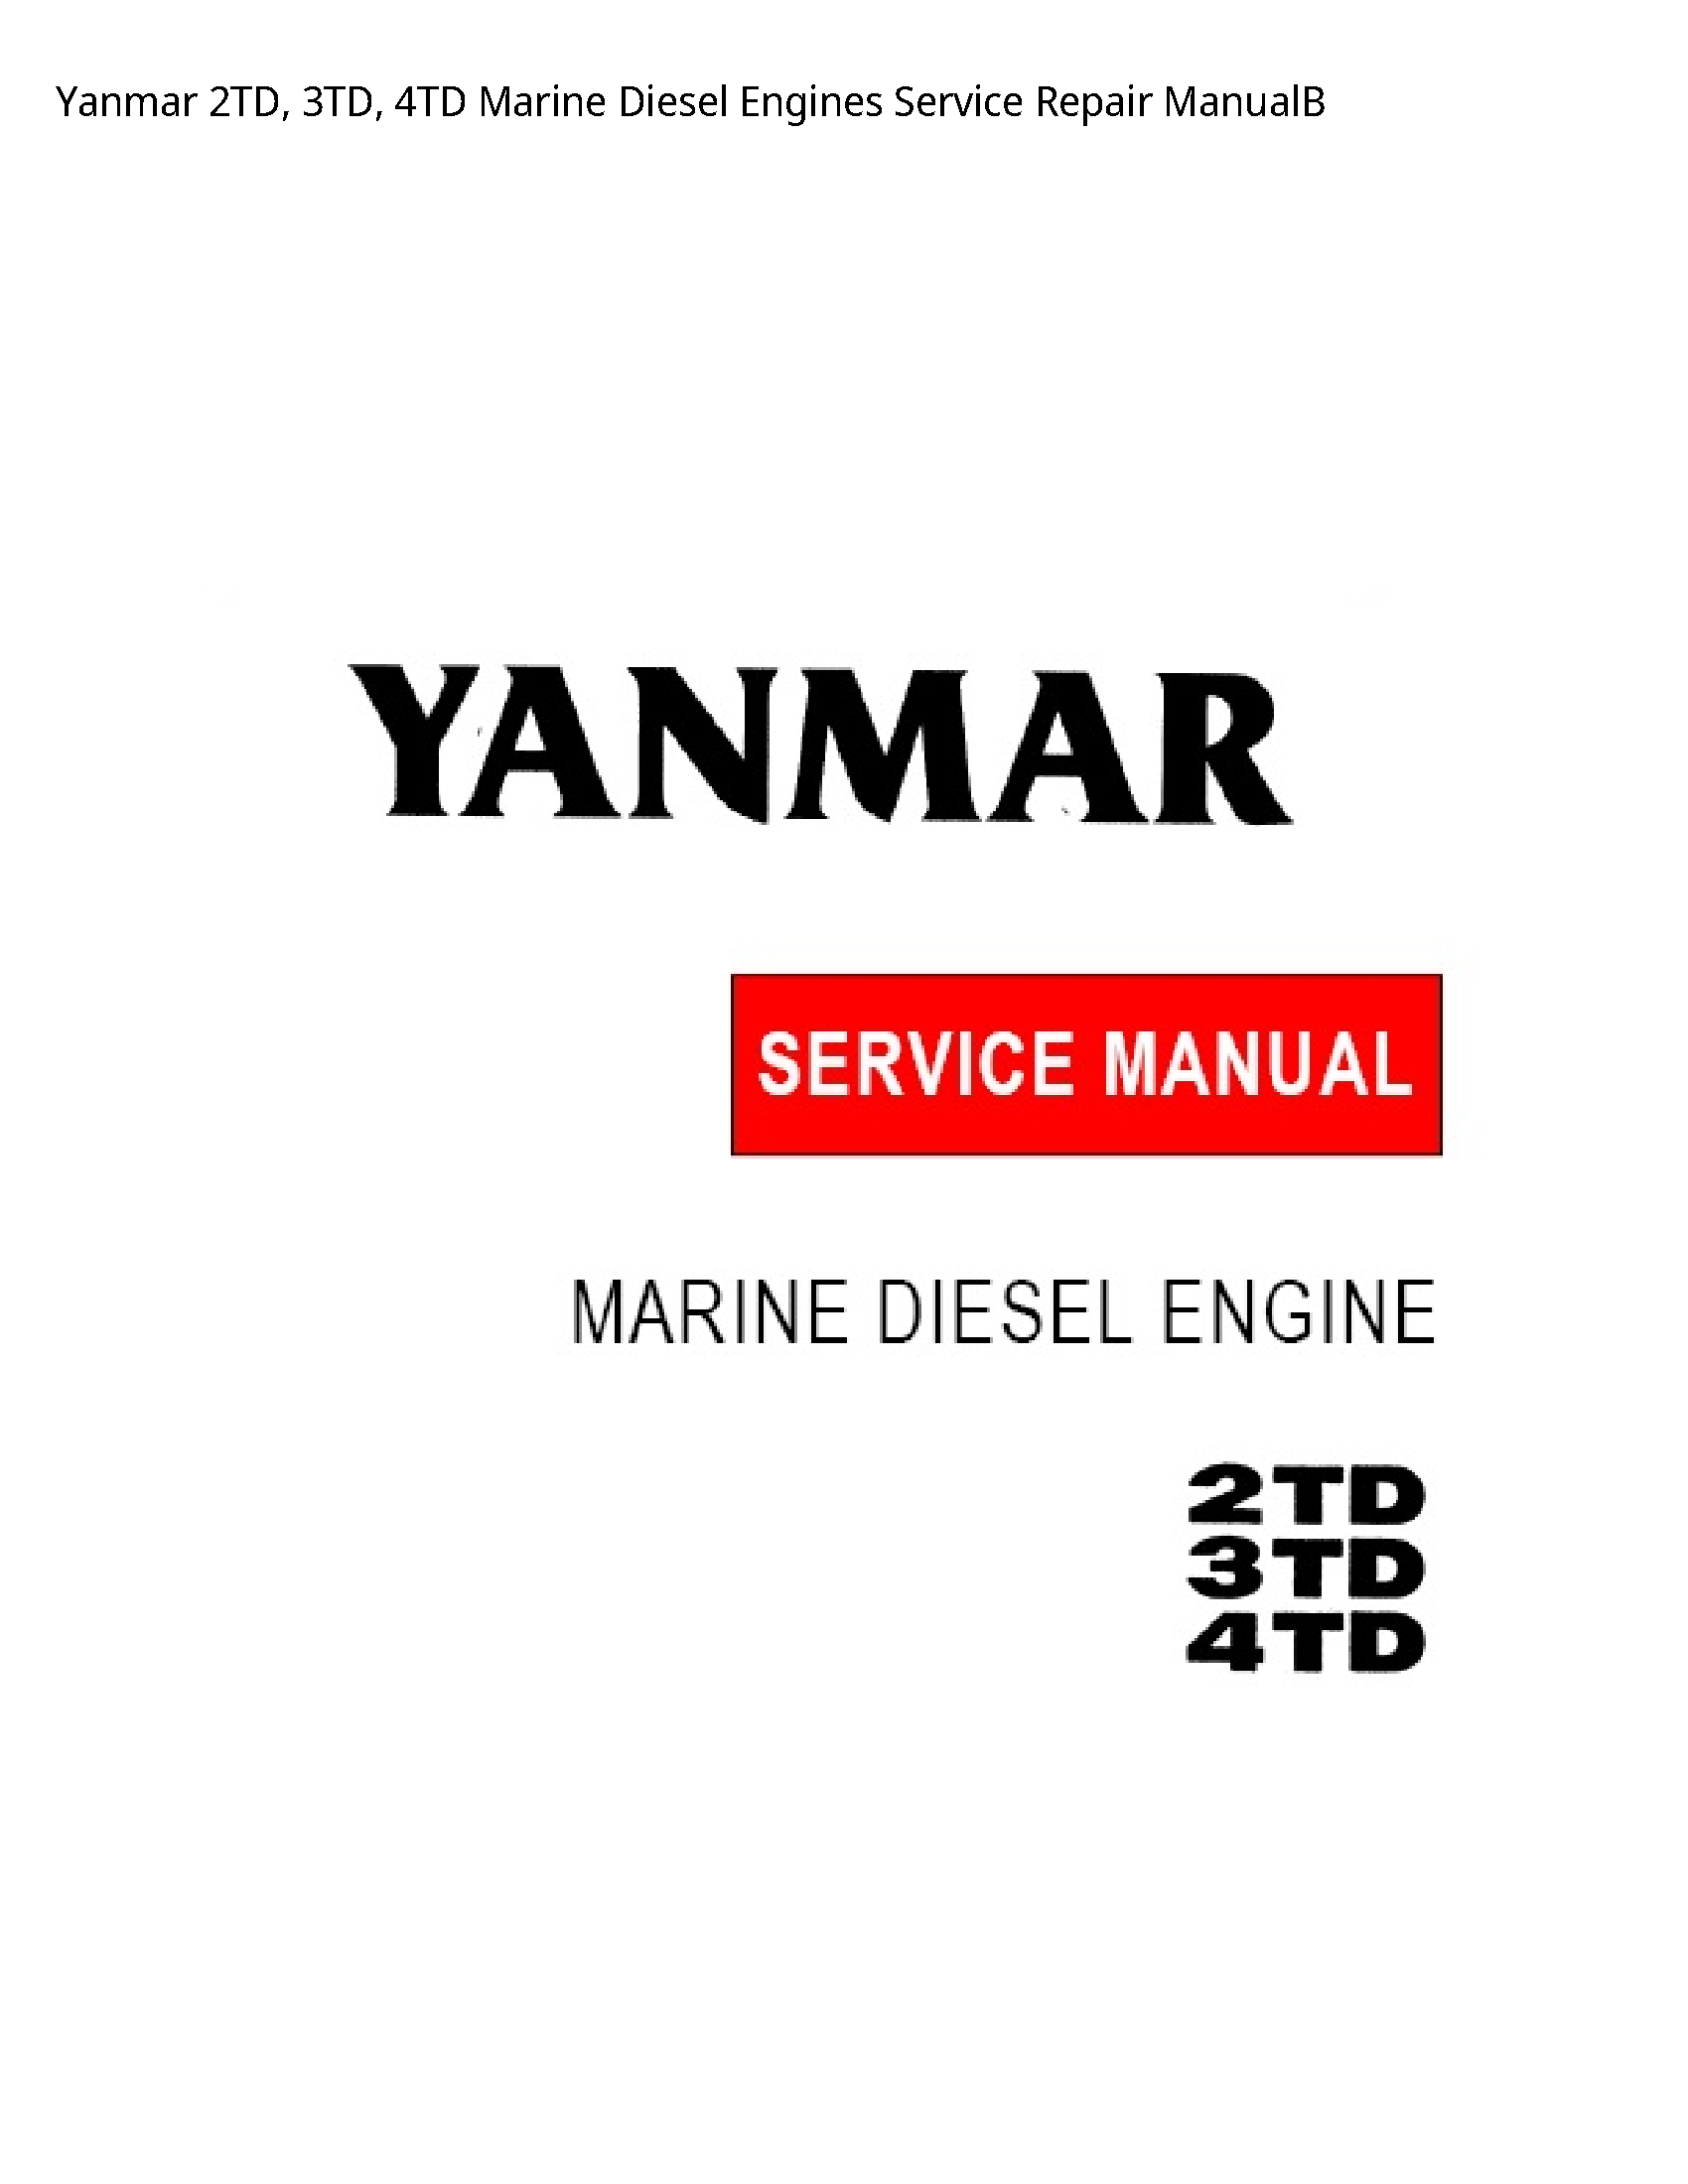 Yanmar 2TD Marine Diesel Engines manual